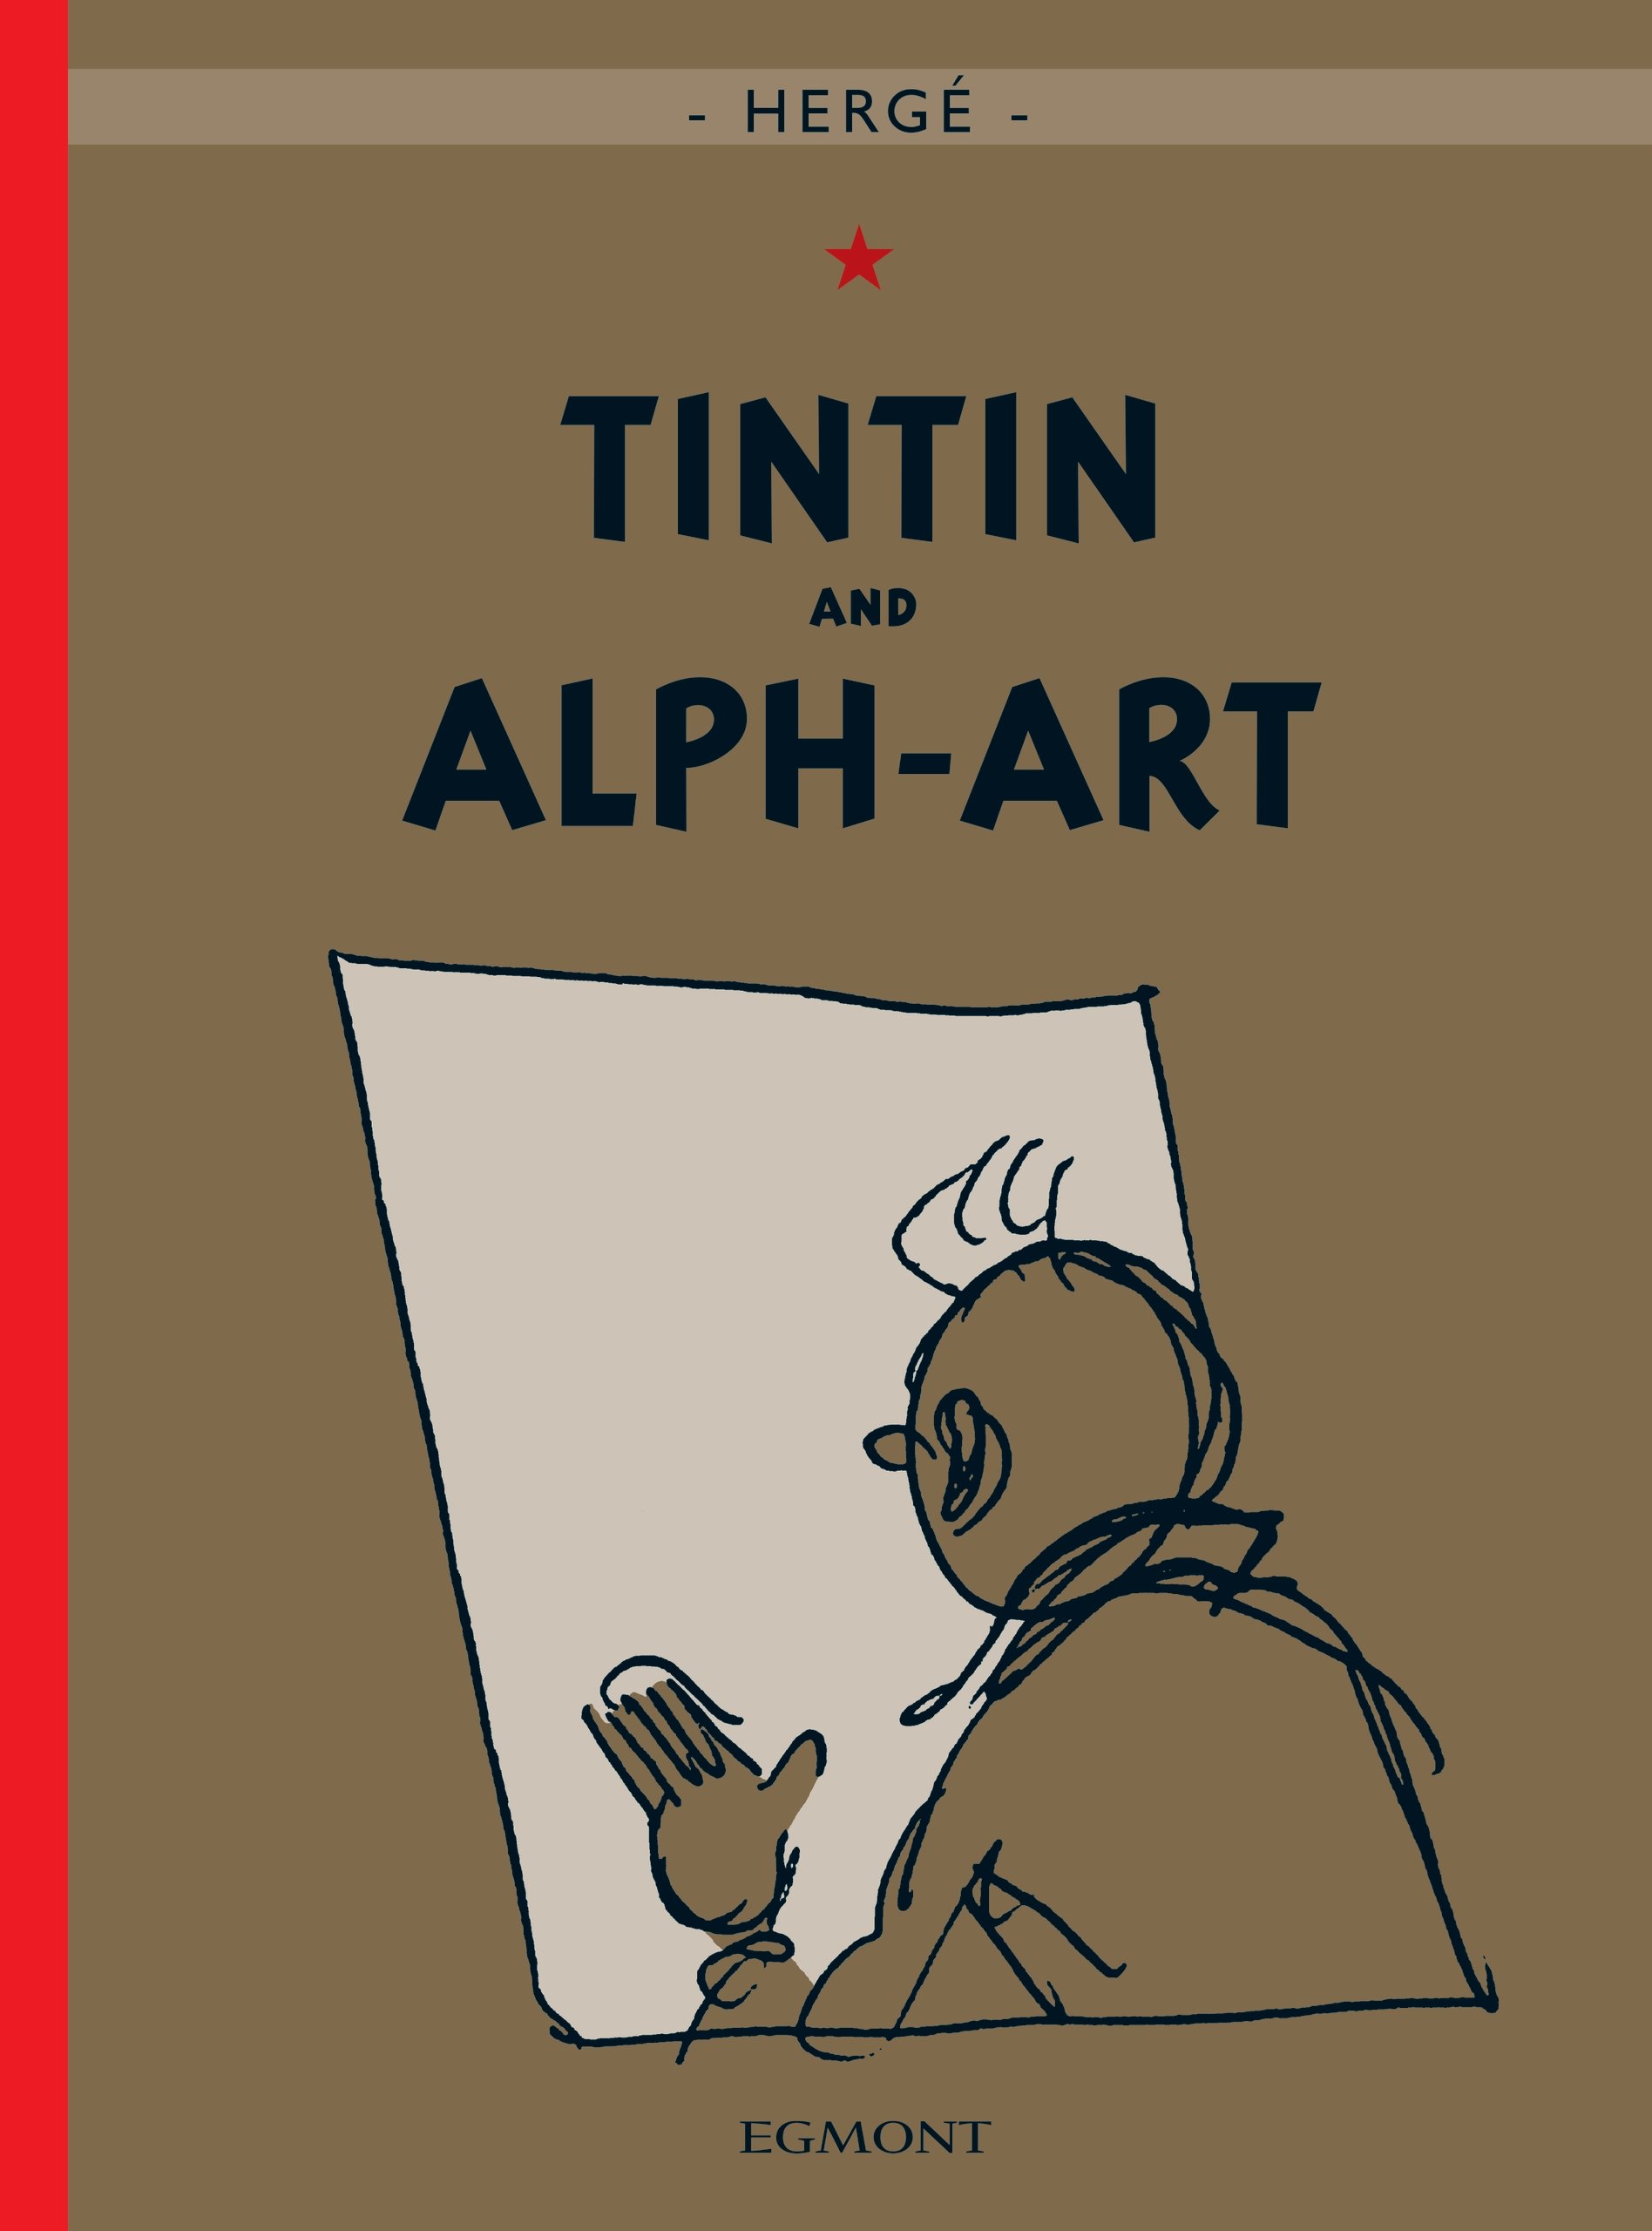 Tintin and Alph-Art - Hergé